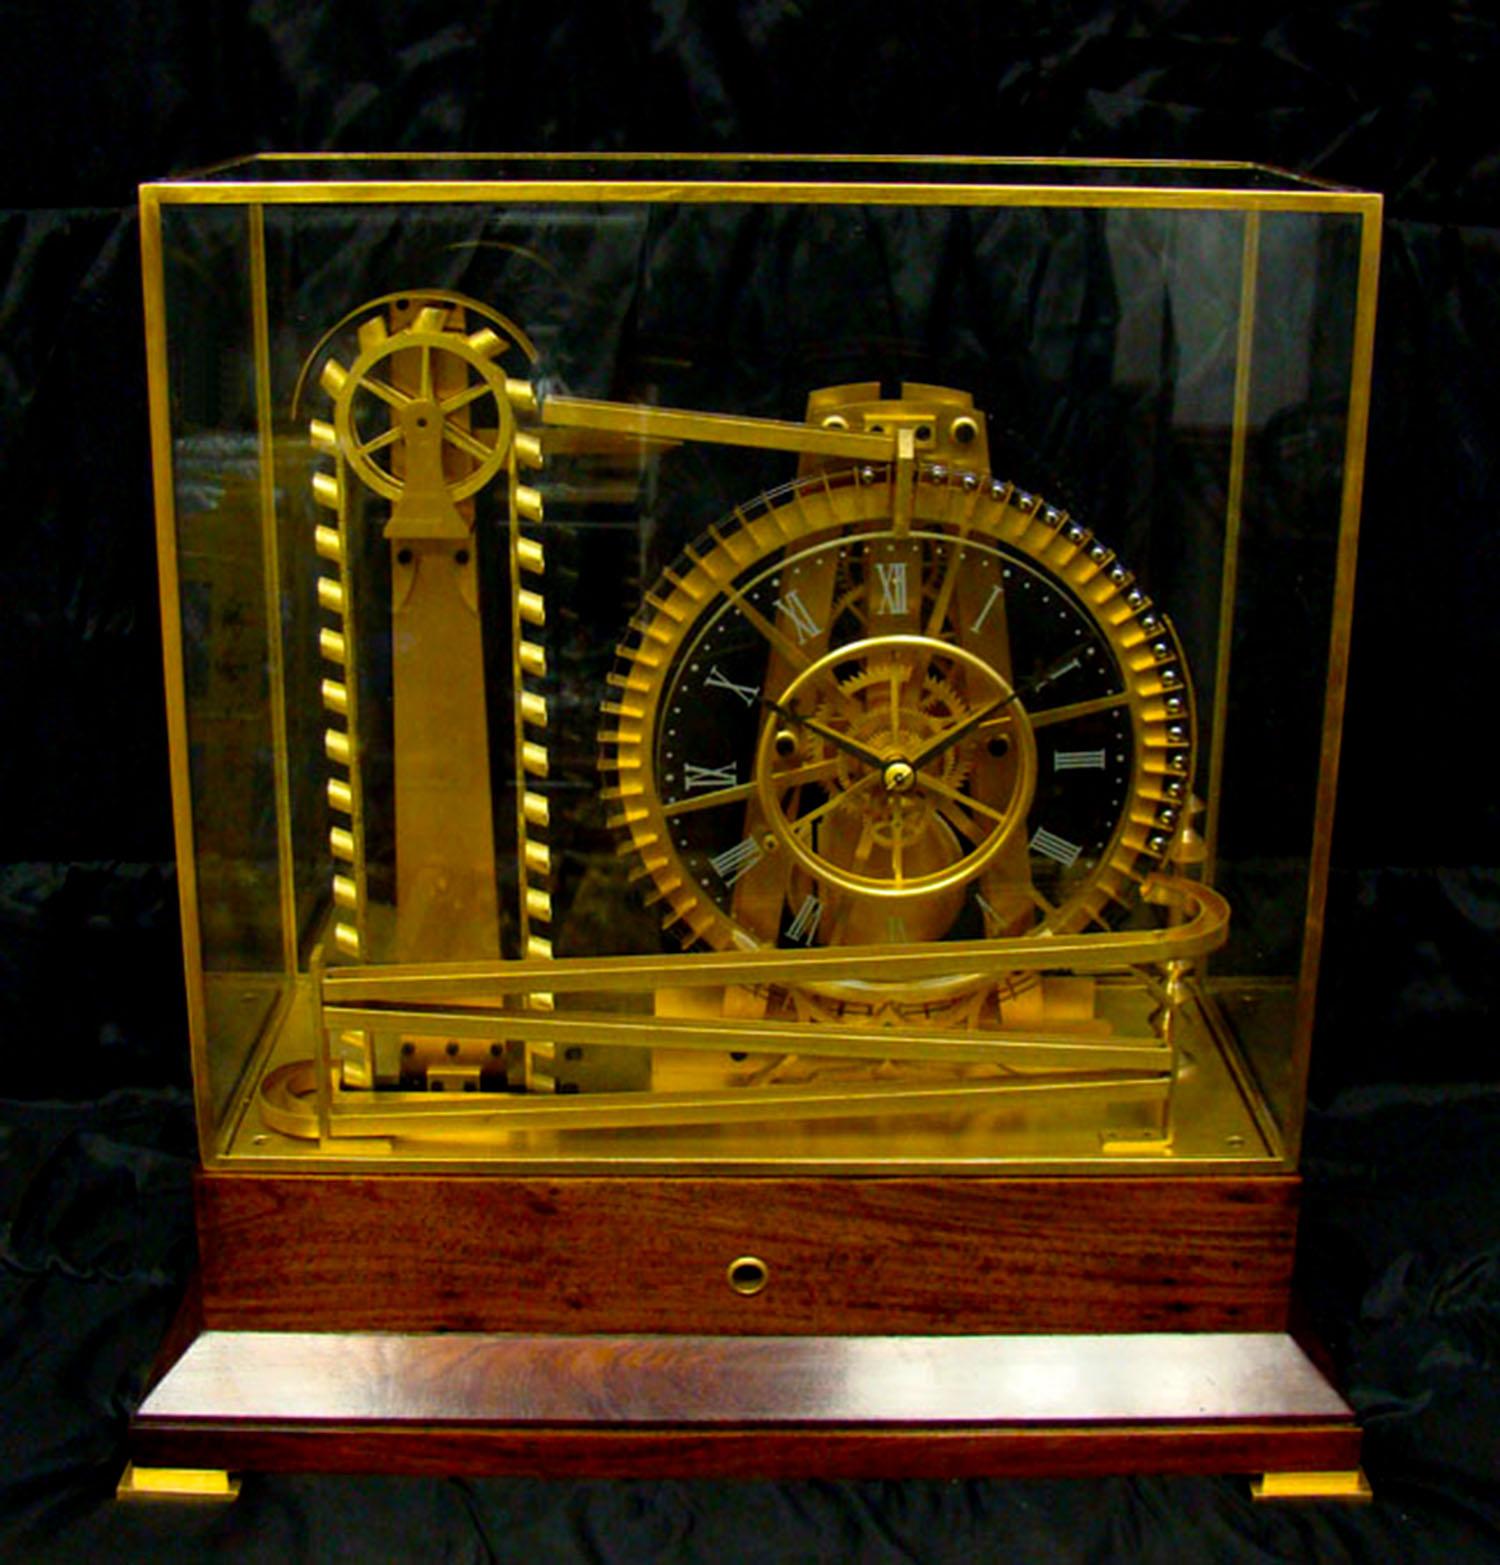 Pour votre considération, nous vous proposons une mystérieuse horloge industrielle à roue à eau et roulement à billes. Elle est équipée d'un mouvement de 8 jours et garde très bien l'heure ! Cette horloge industrielle à roue à aubes possède une